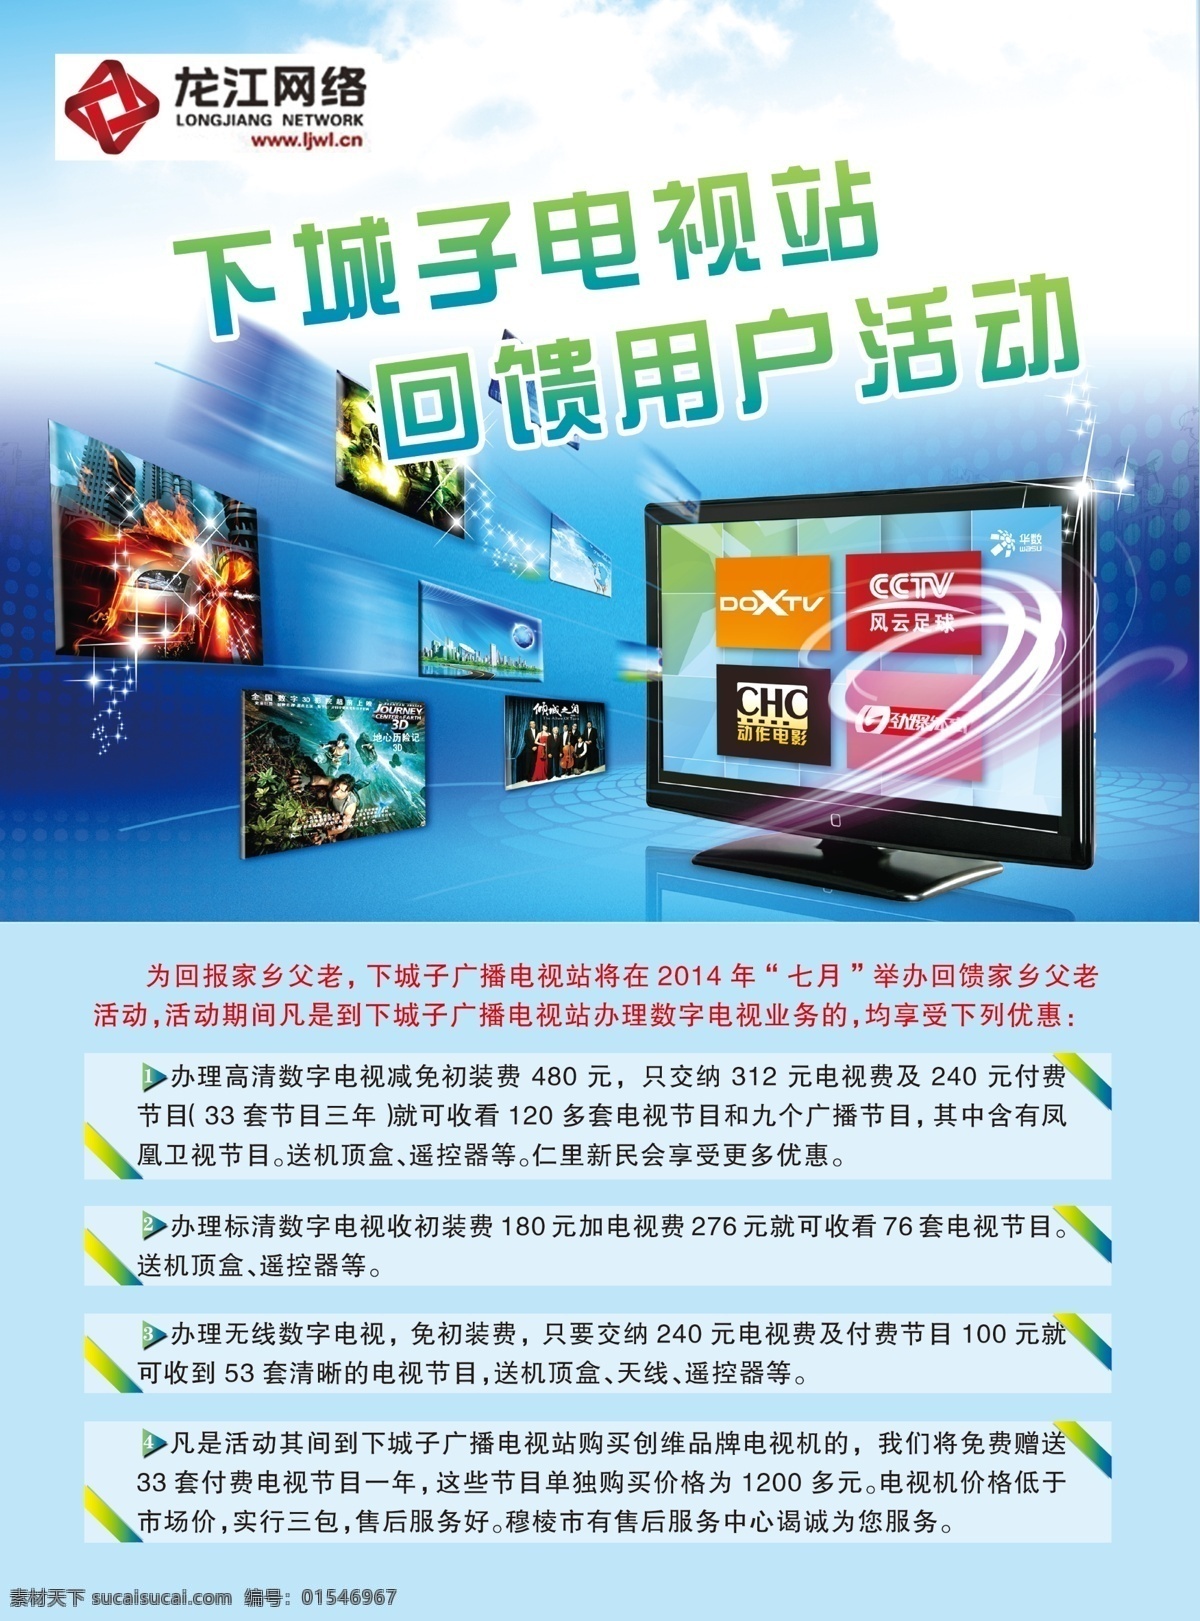 电视台宣传单 广播电视 回馈用户 宣传单 龙江网络 卫星天线 dm宣传单